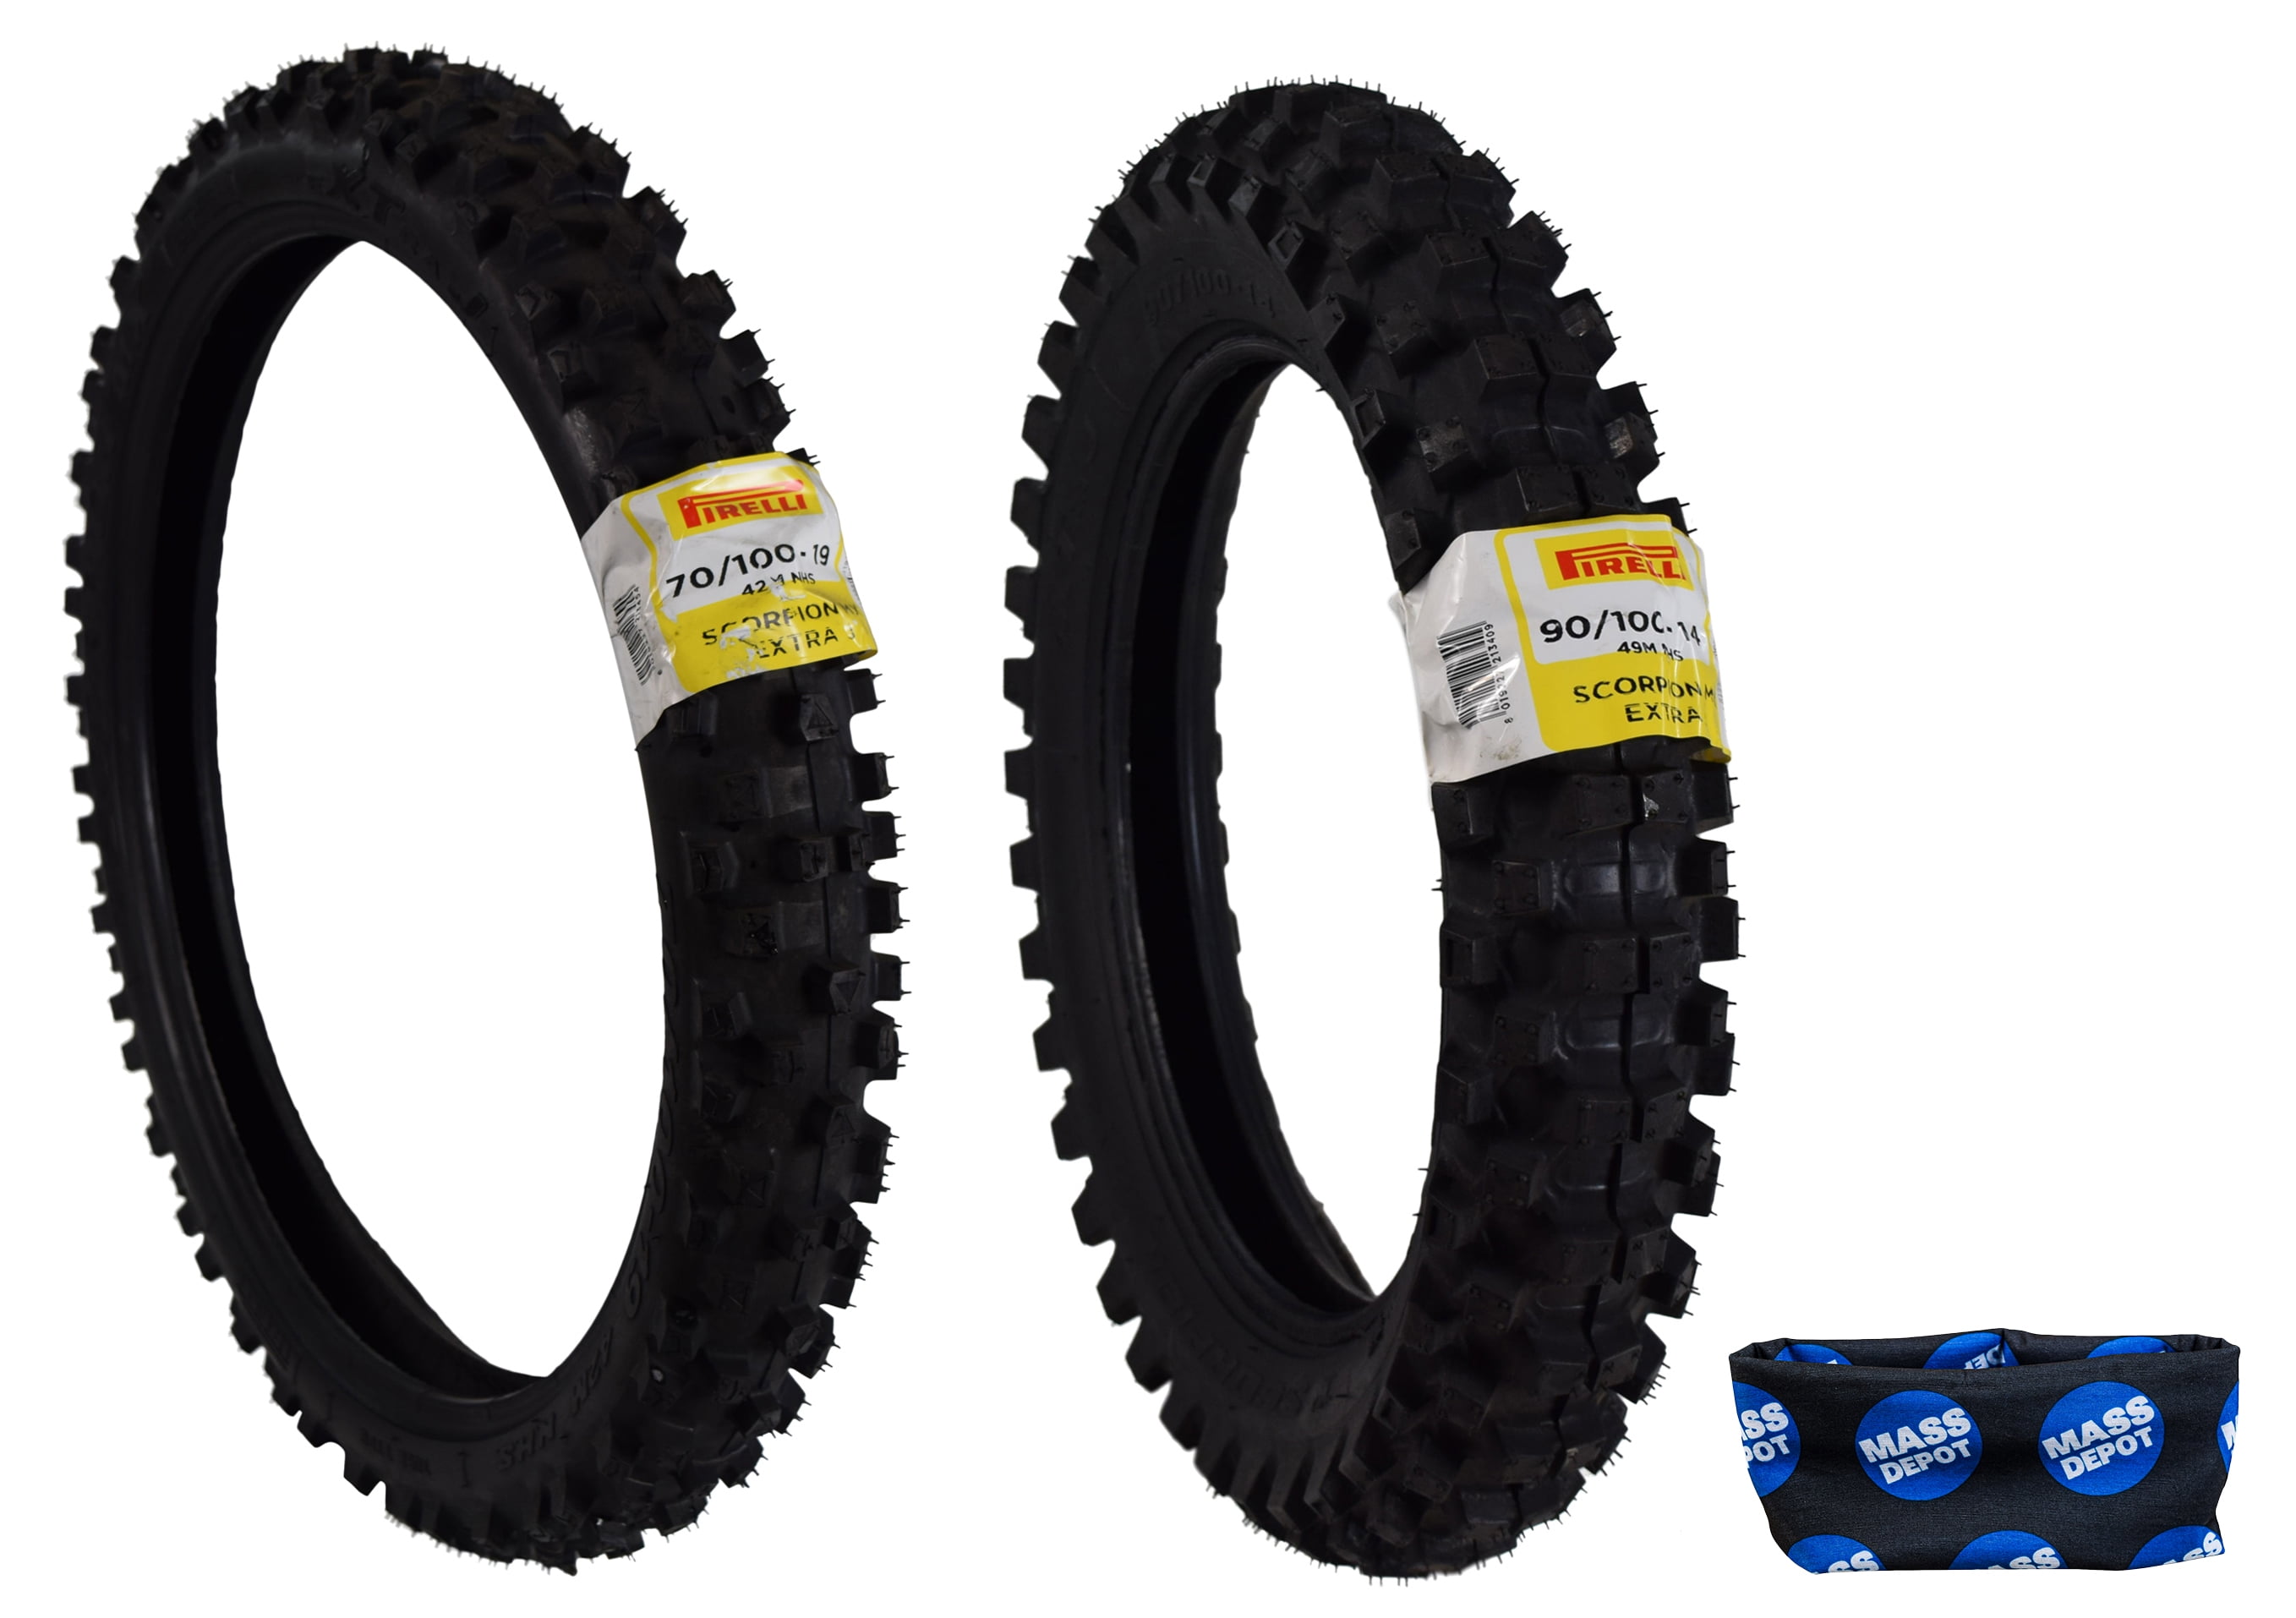 70/100-19 Front 90/100-16 Rear Motocross Mini Tyre Set Tubes For Dirt Pit Bike 